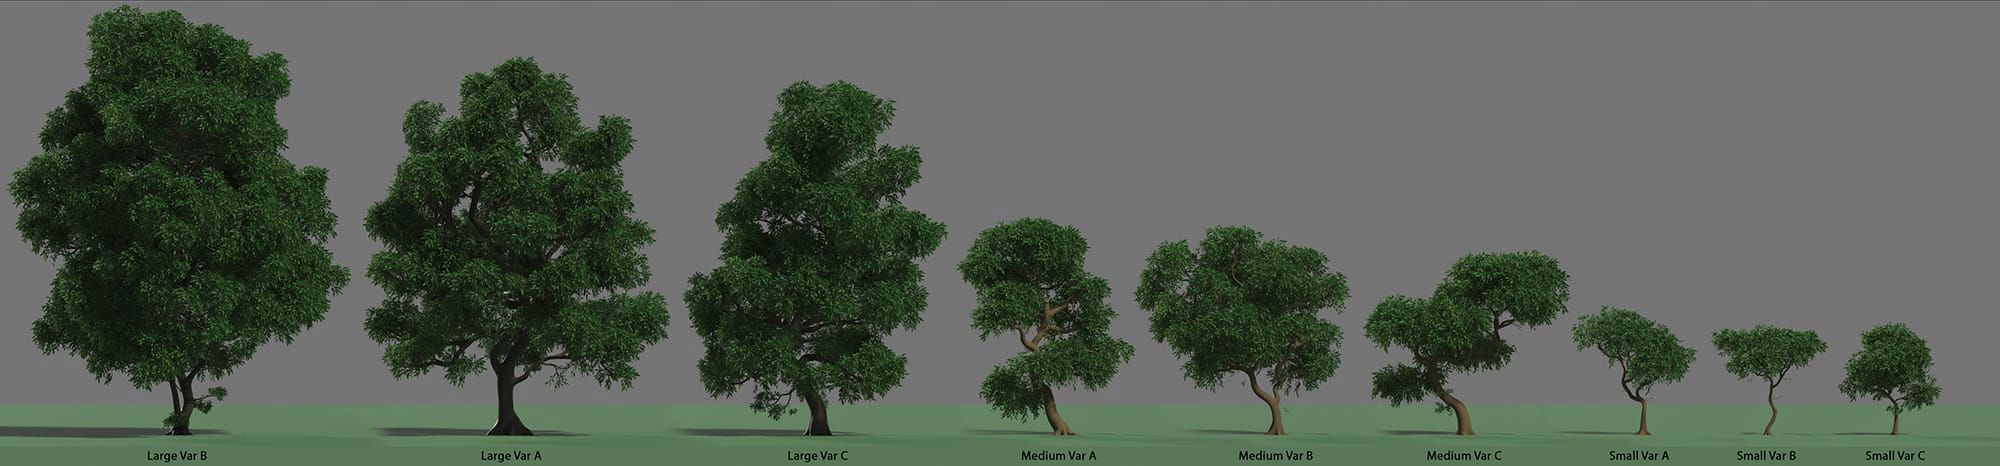 Tree Lineup